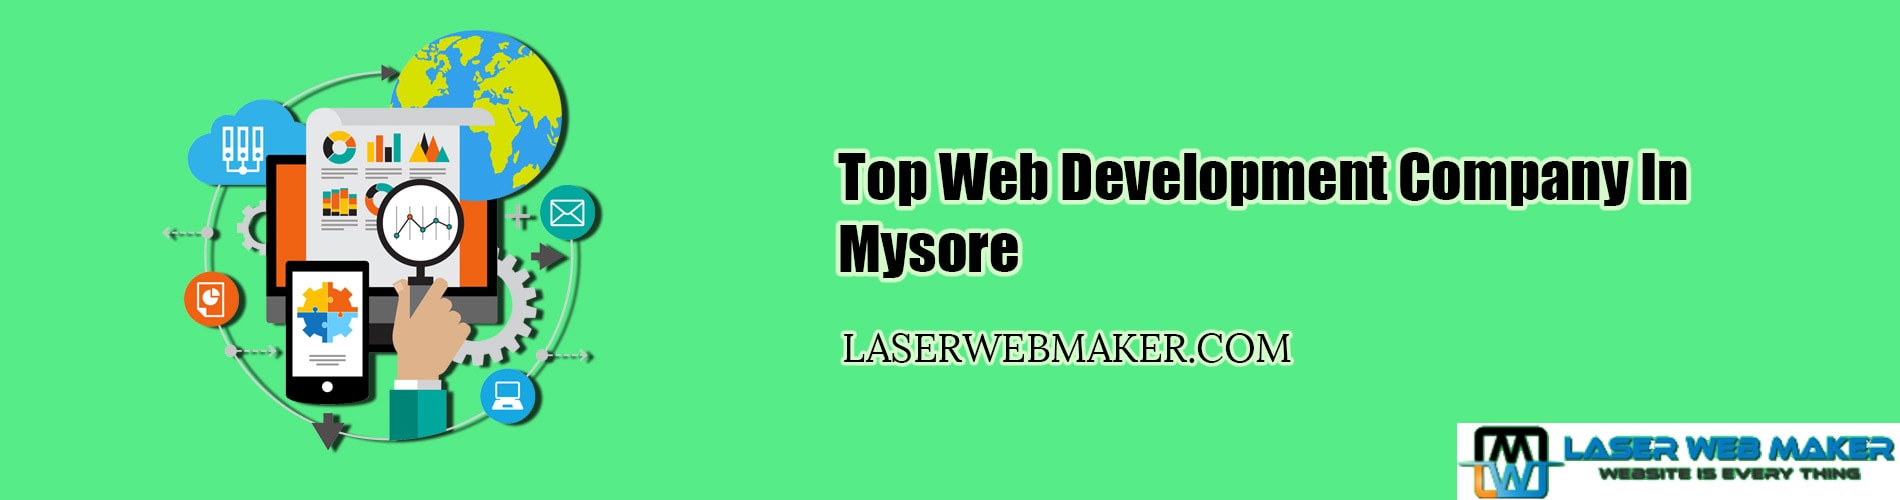 Top Web Development Company In Mysore